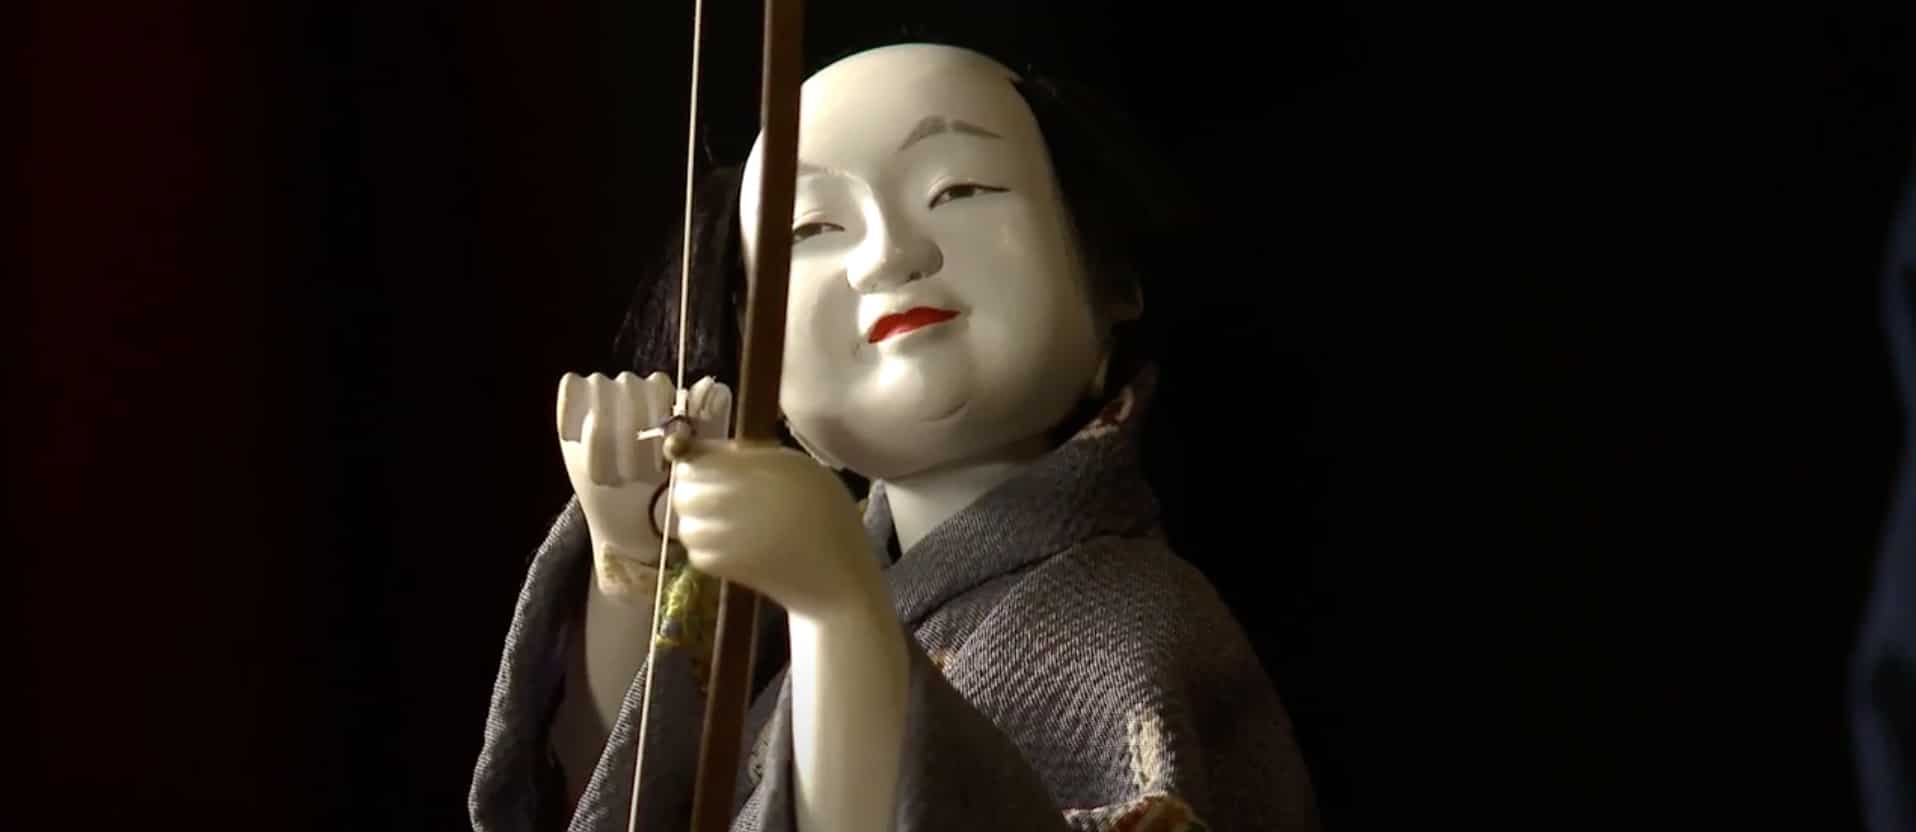 karakuri-ningyo-automate-japon-histoire-detail-sculpture-visage-archer